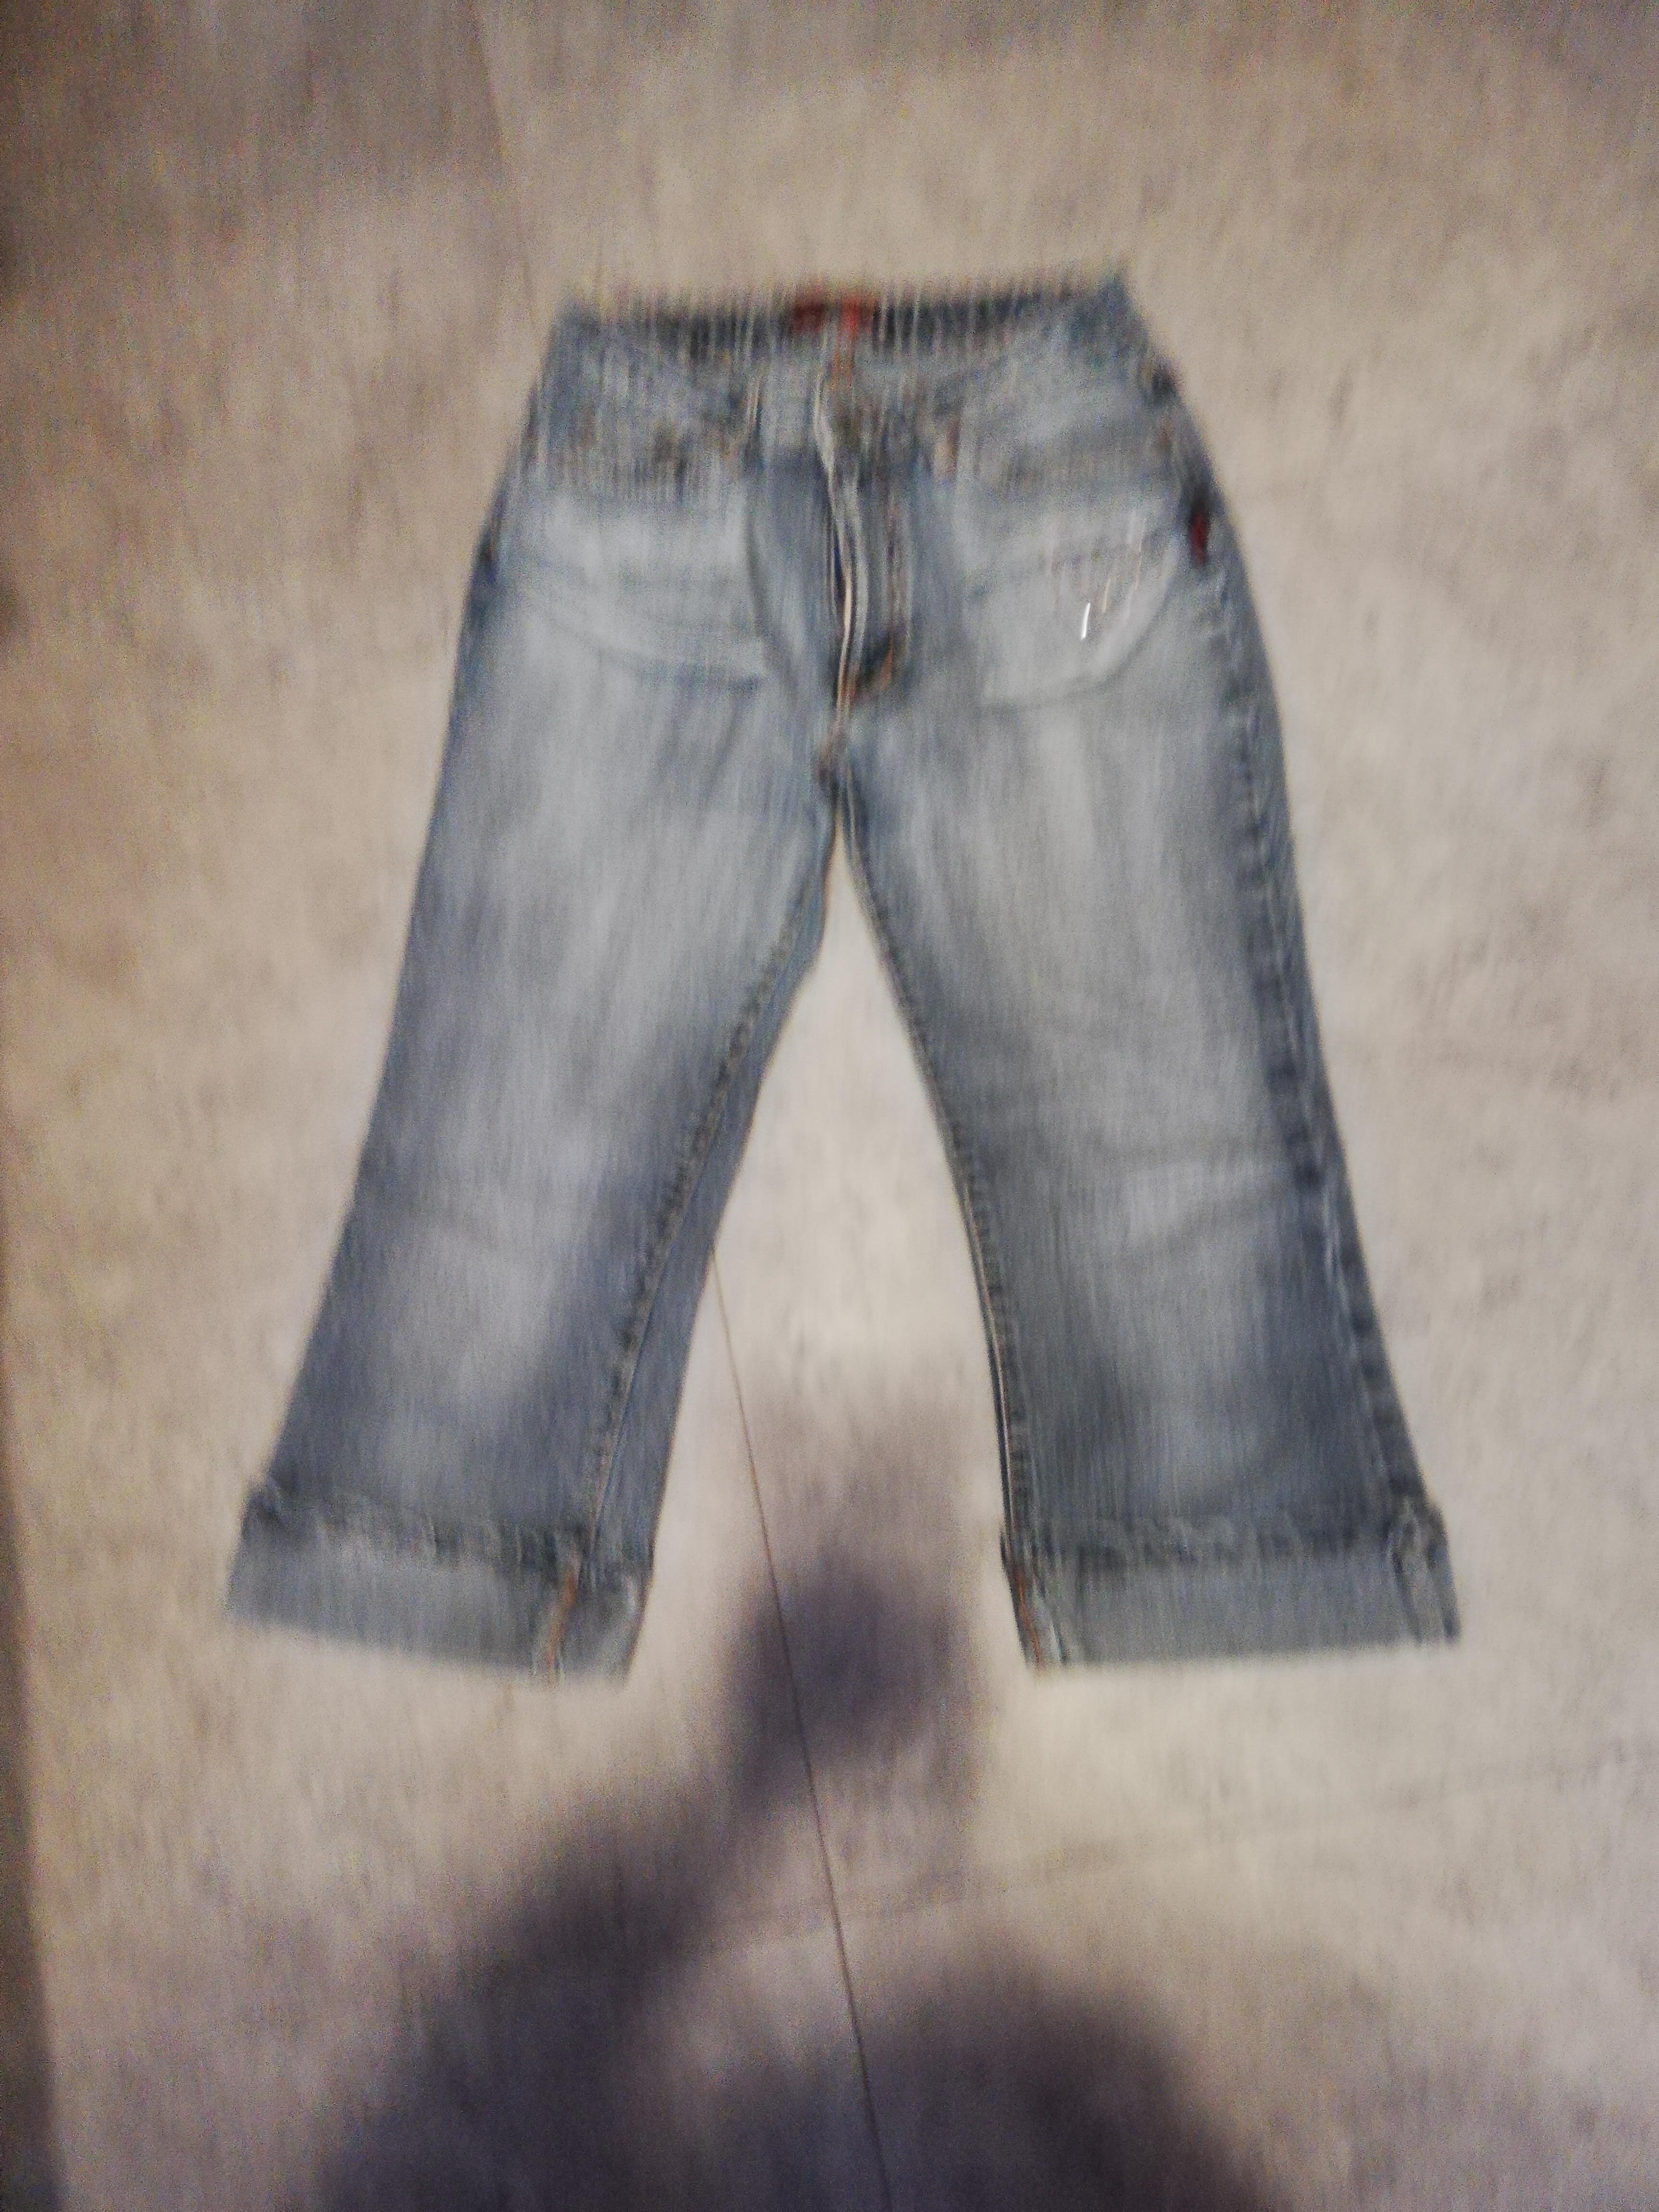 troc de troc pantacourt 16 ans jeans fantaisie brillant  5 noisettes image 0